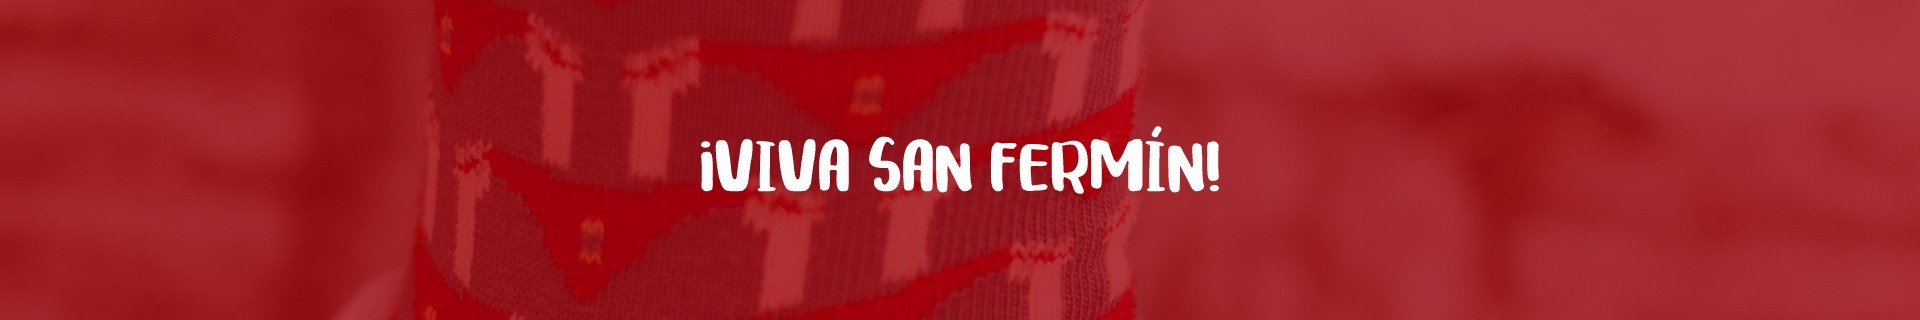 Calcetines de San Fermín